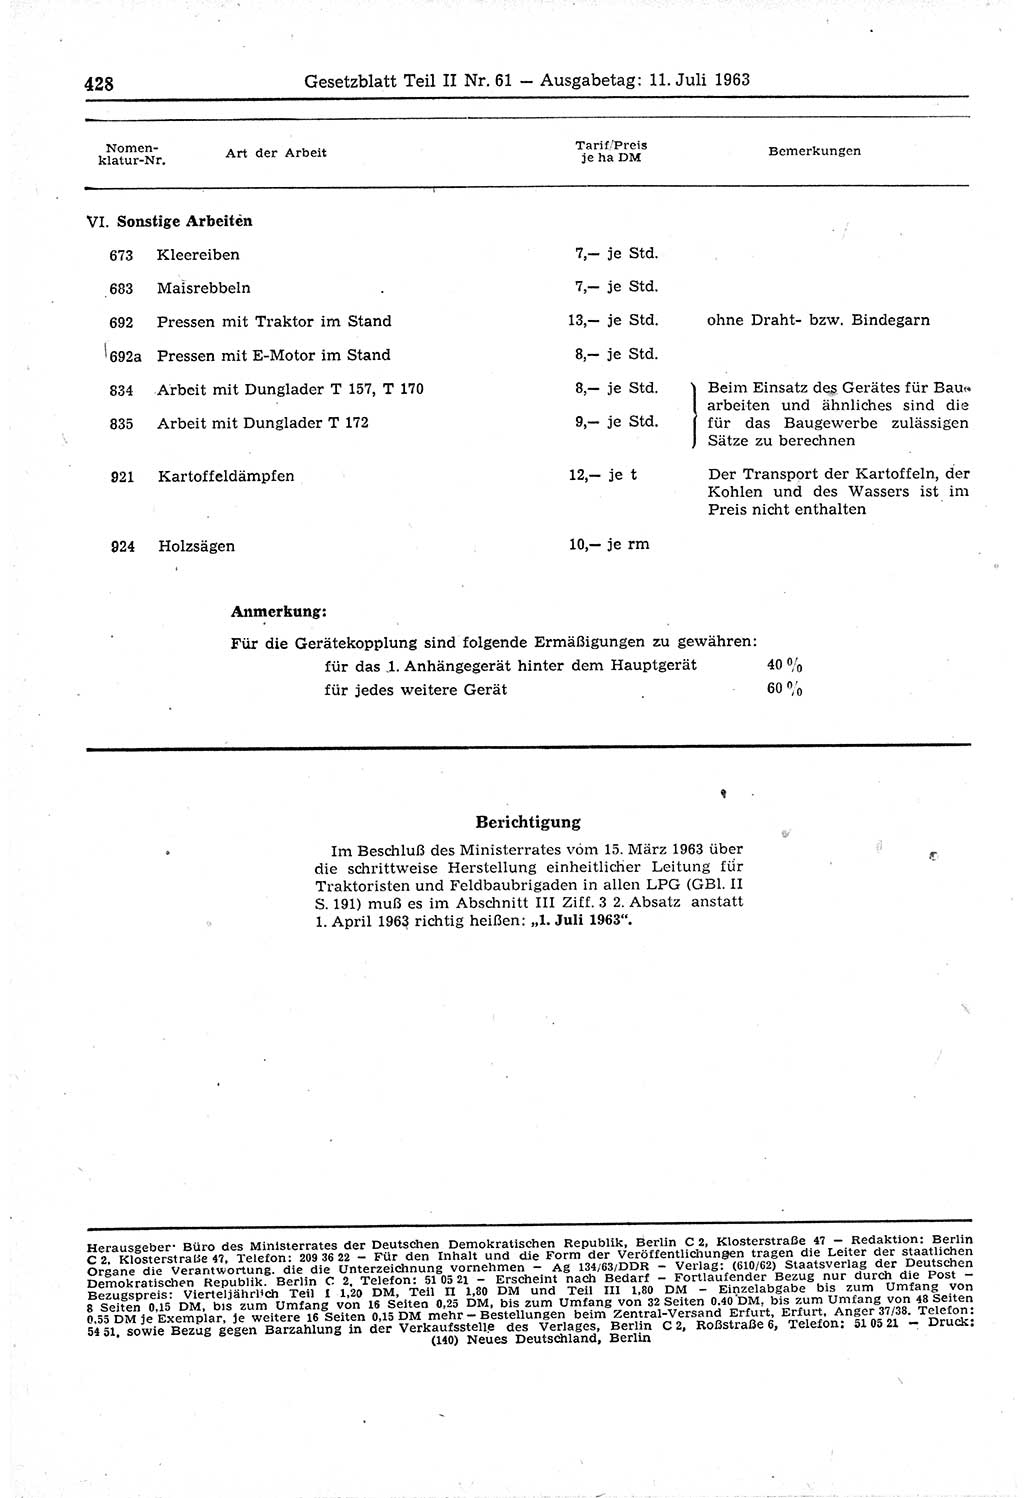 Gesetzblatt (GBl.) der Deutschen Demokratischen Republik (DDR) Teil ⅠⅠ 1963, Seite 428 (GBl. DDR ⅠⅠ 1963, S. 428)